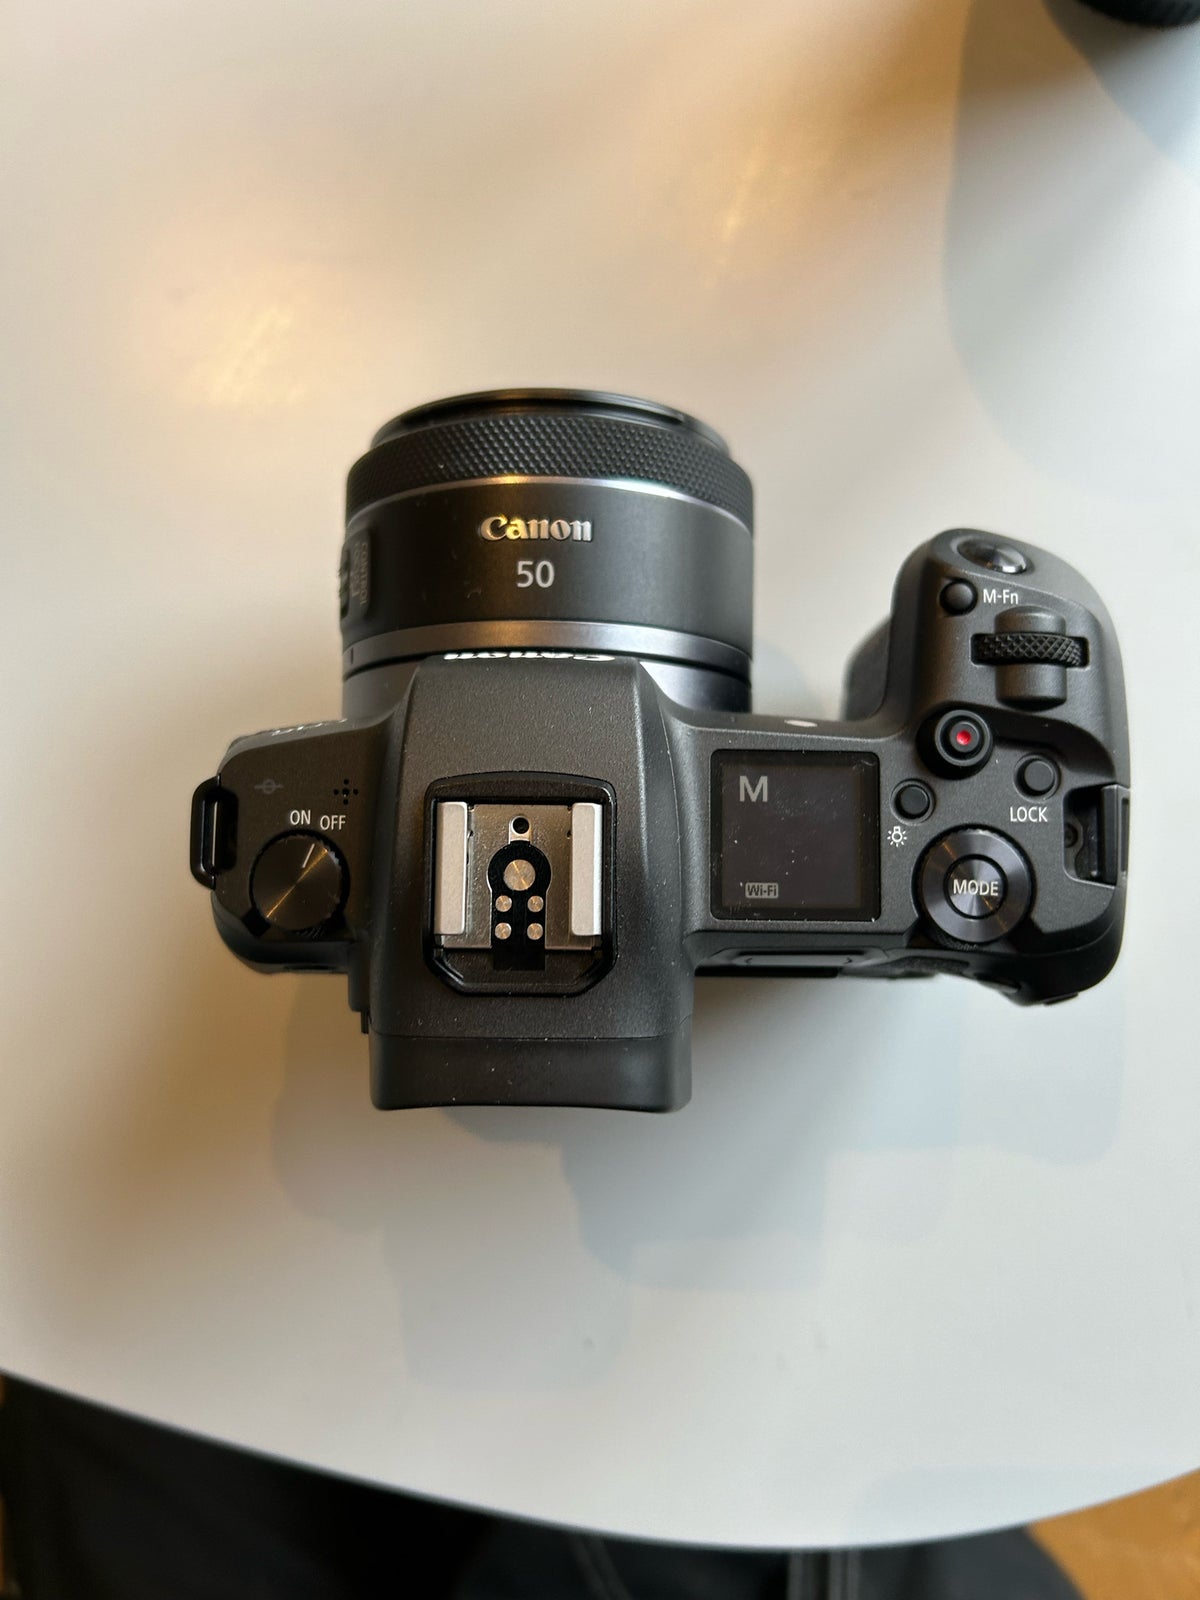 Canon, EOS R, 30,3 megapixels